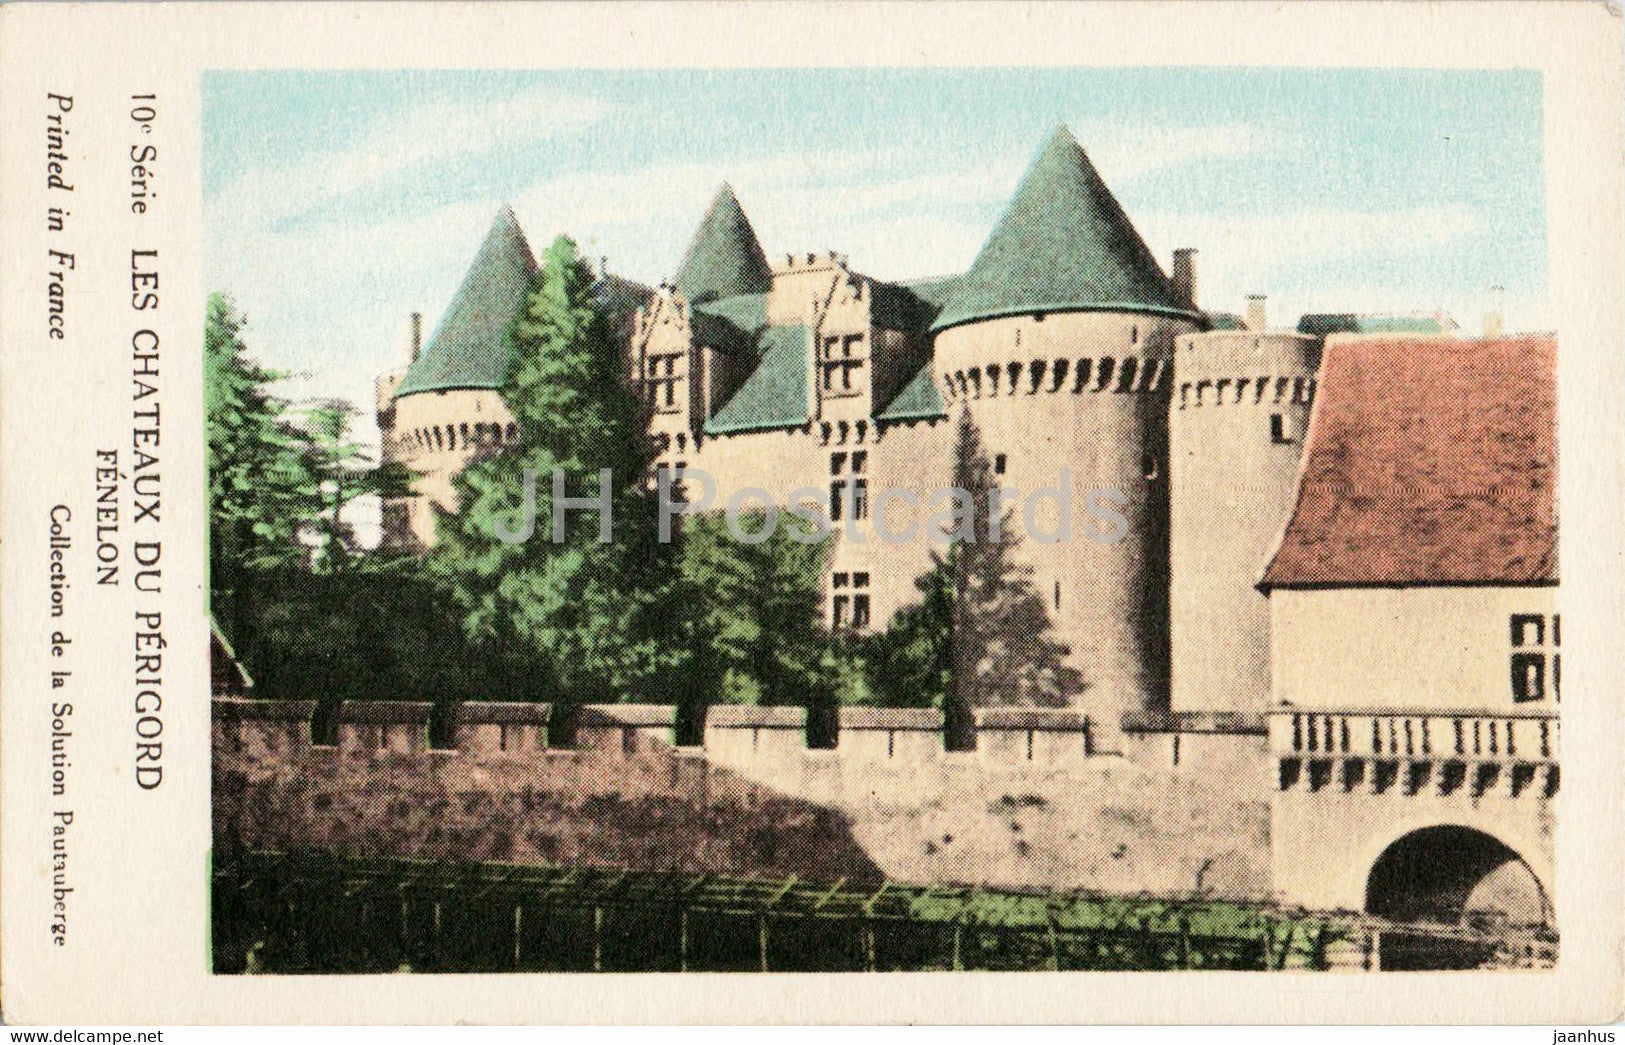 Les Chateaux du Perigord - Fenelon - castle - old postcard - France - unused - JH Postcards